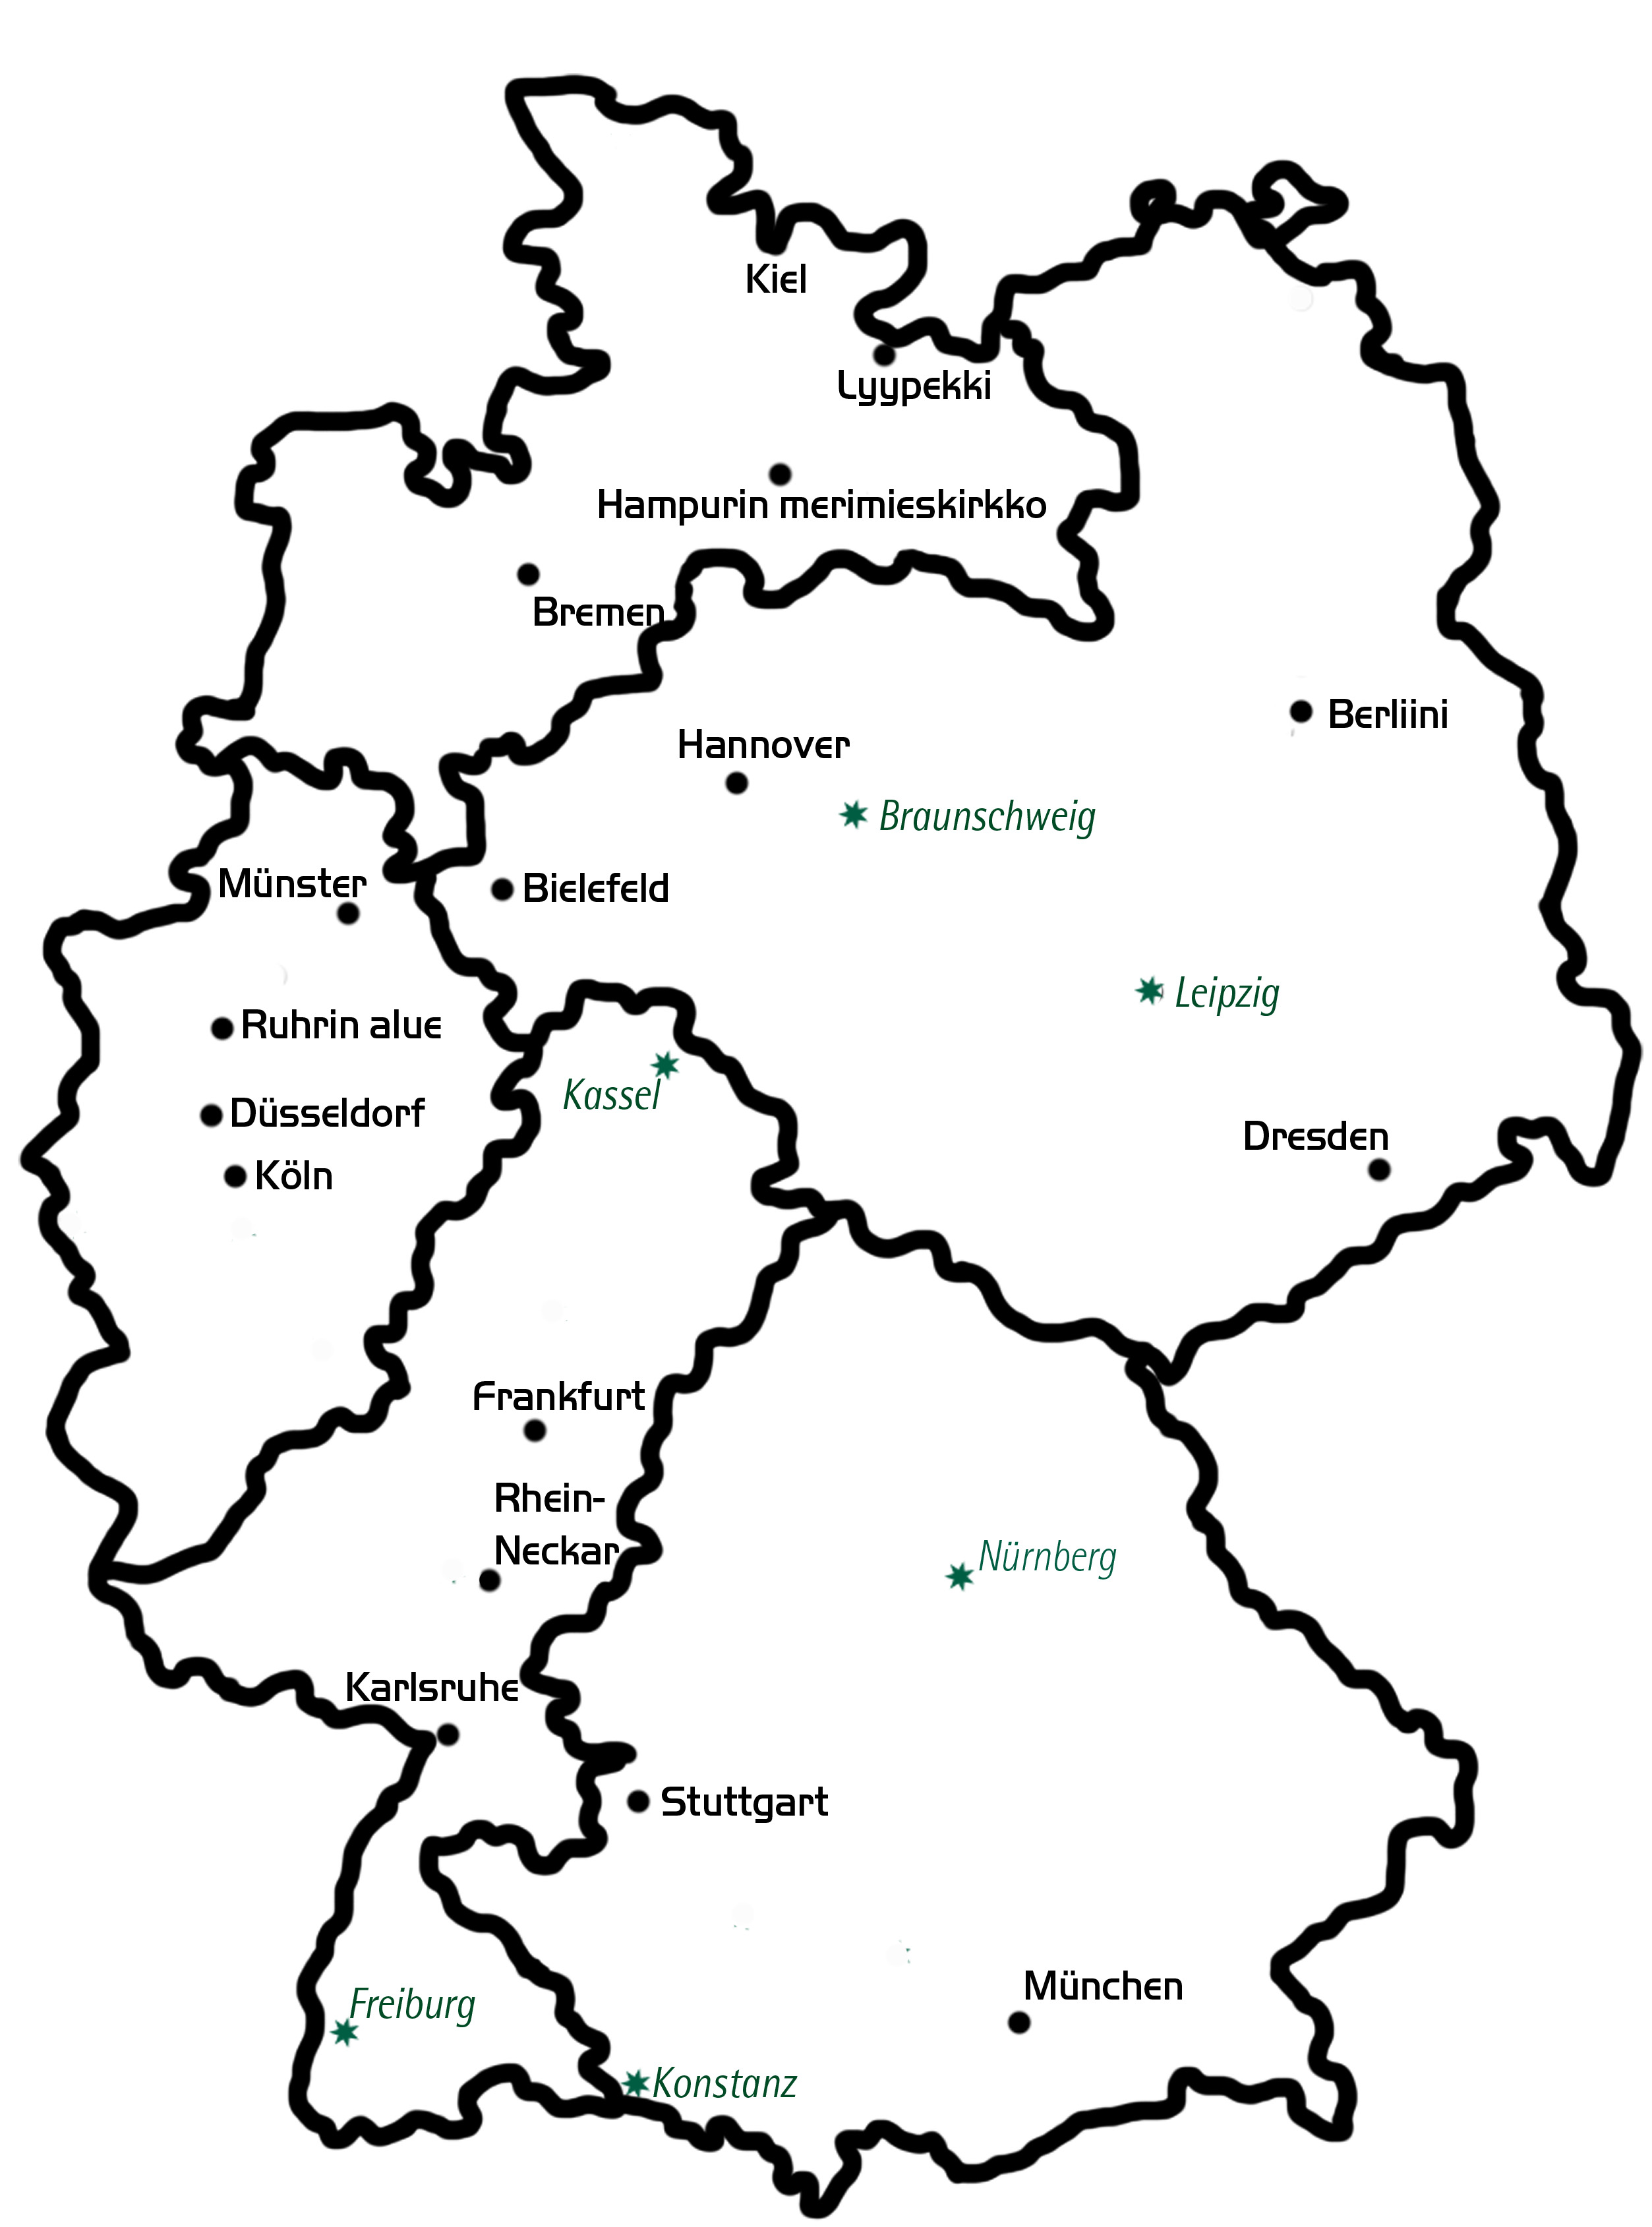 Saksan kartta, johon merkitty suomalaiset seurakunnat ja jumalanpalveluspaikkakunnat